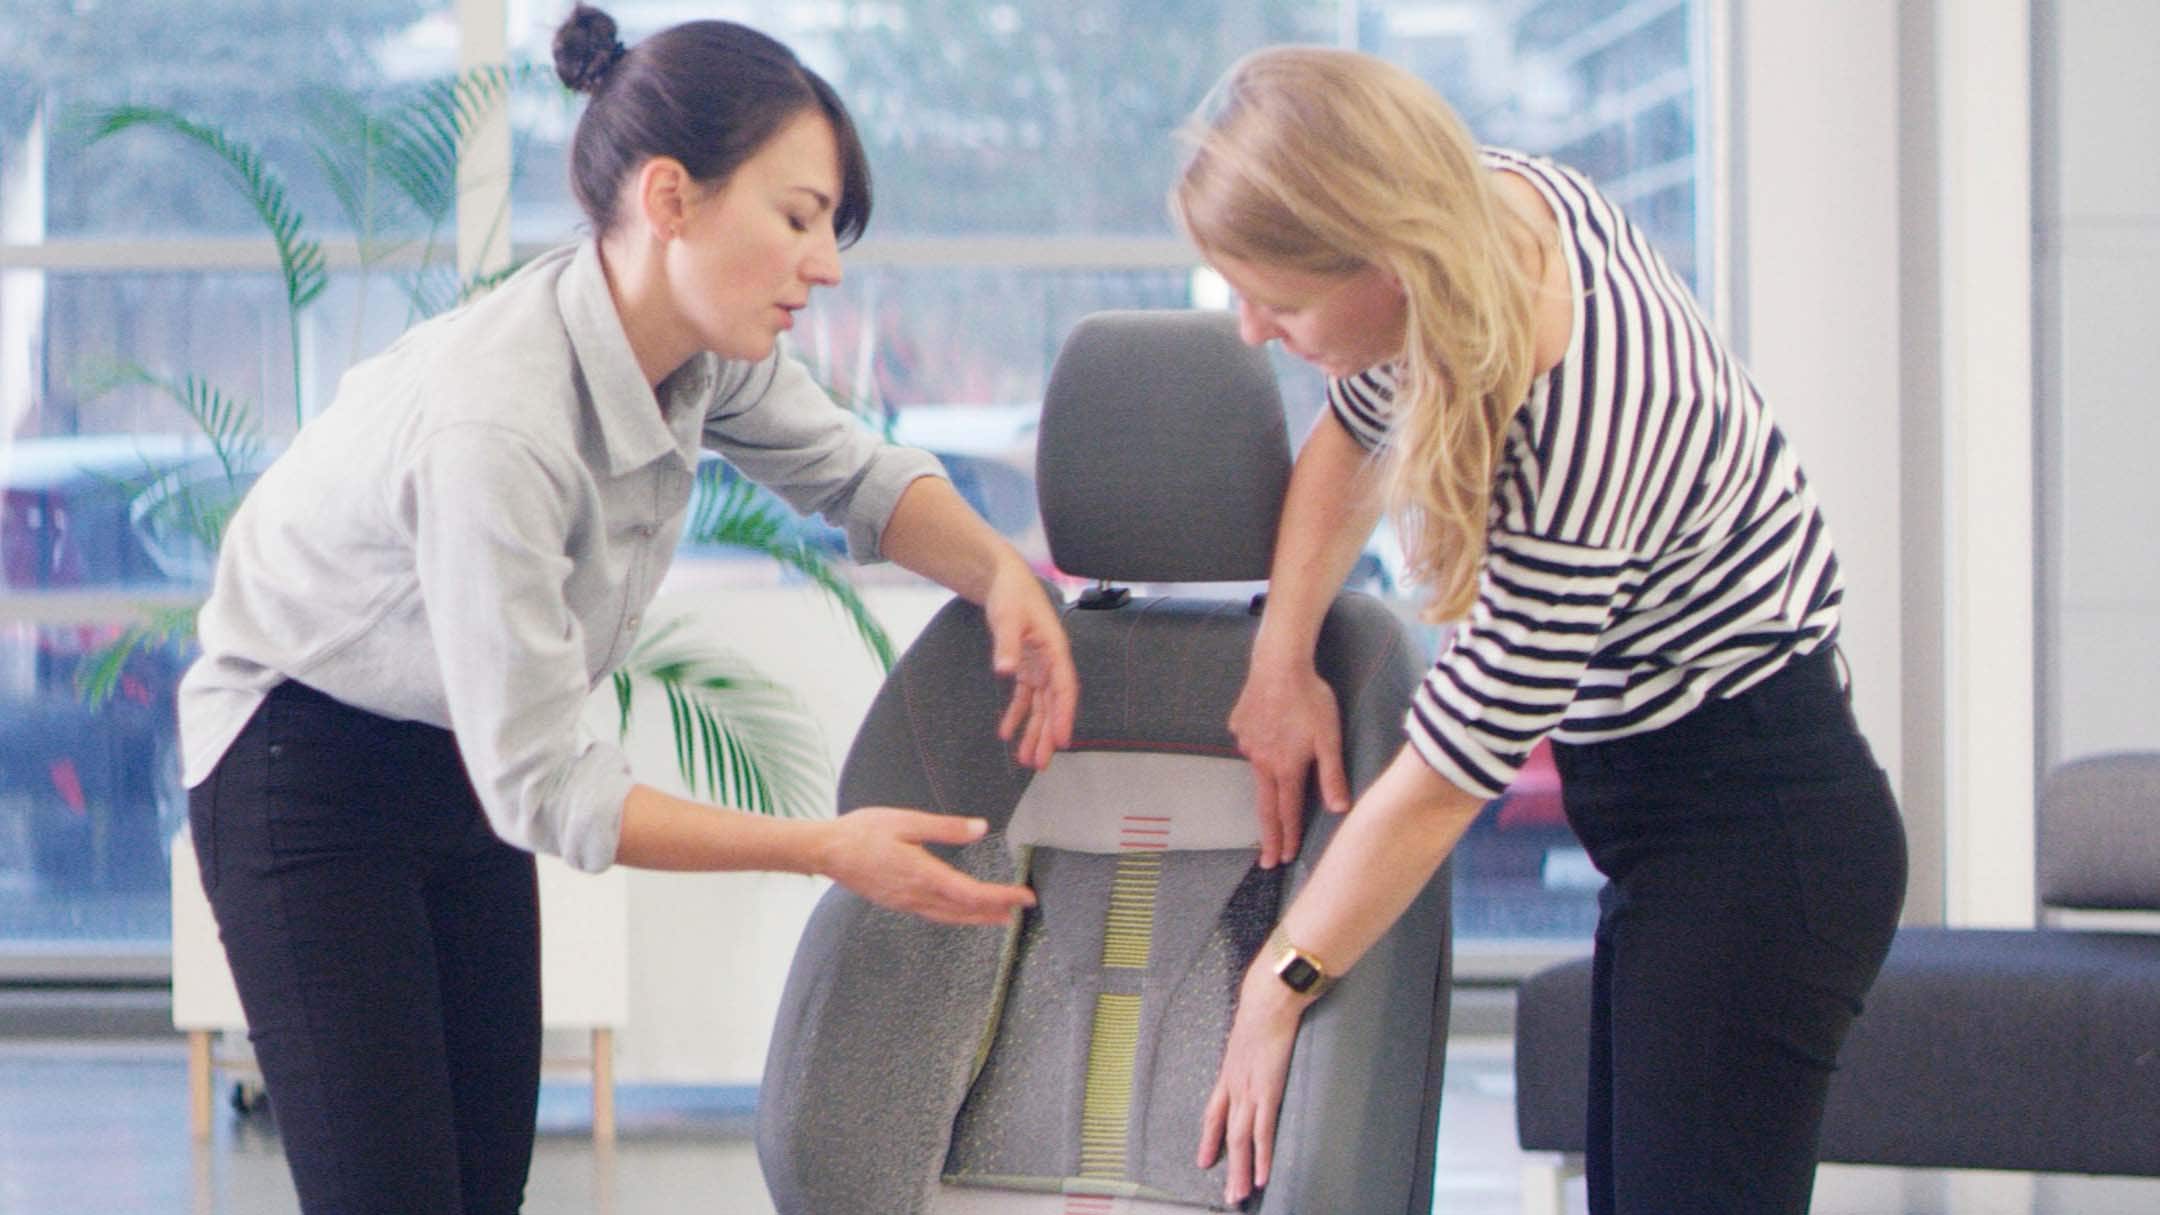 Ford interns designing a car seat